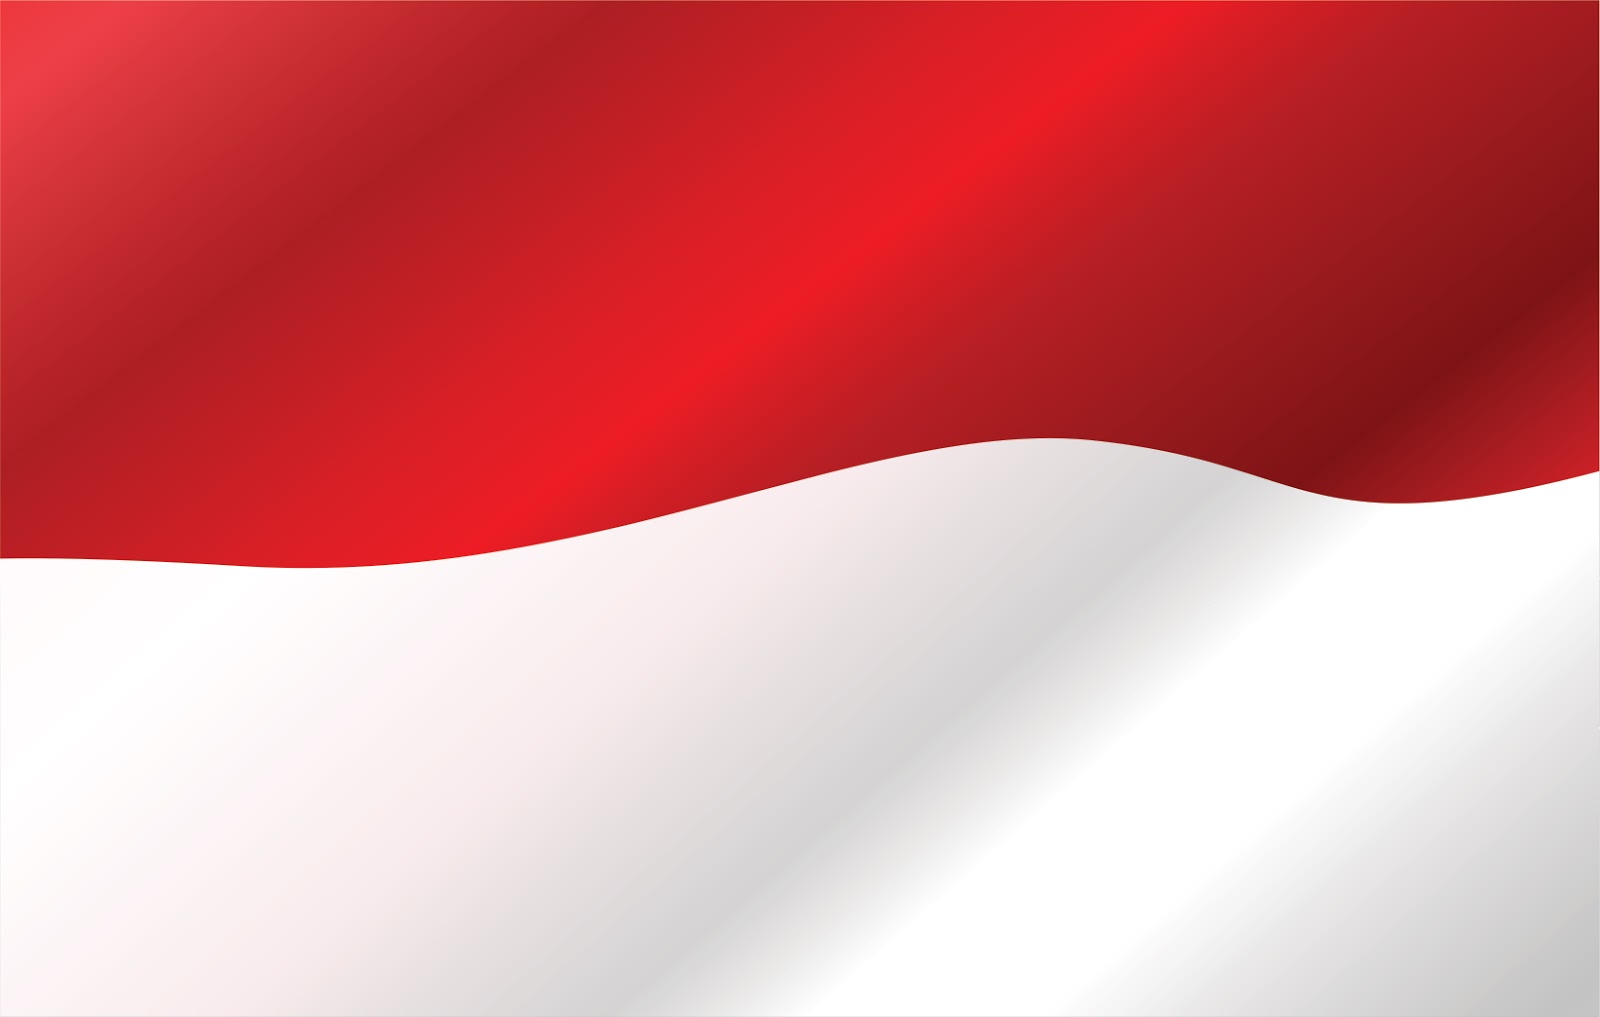 Bendera Merah Putih Vektor Free Download - Agen87.